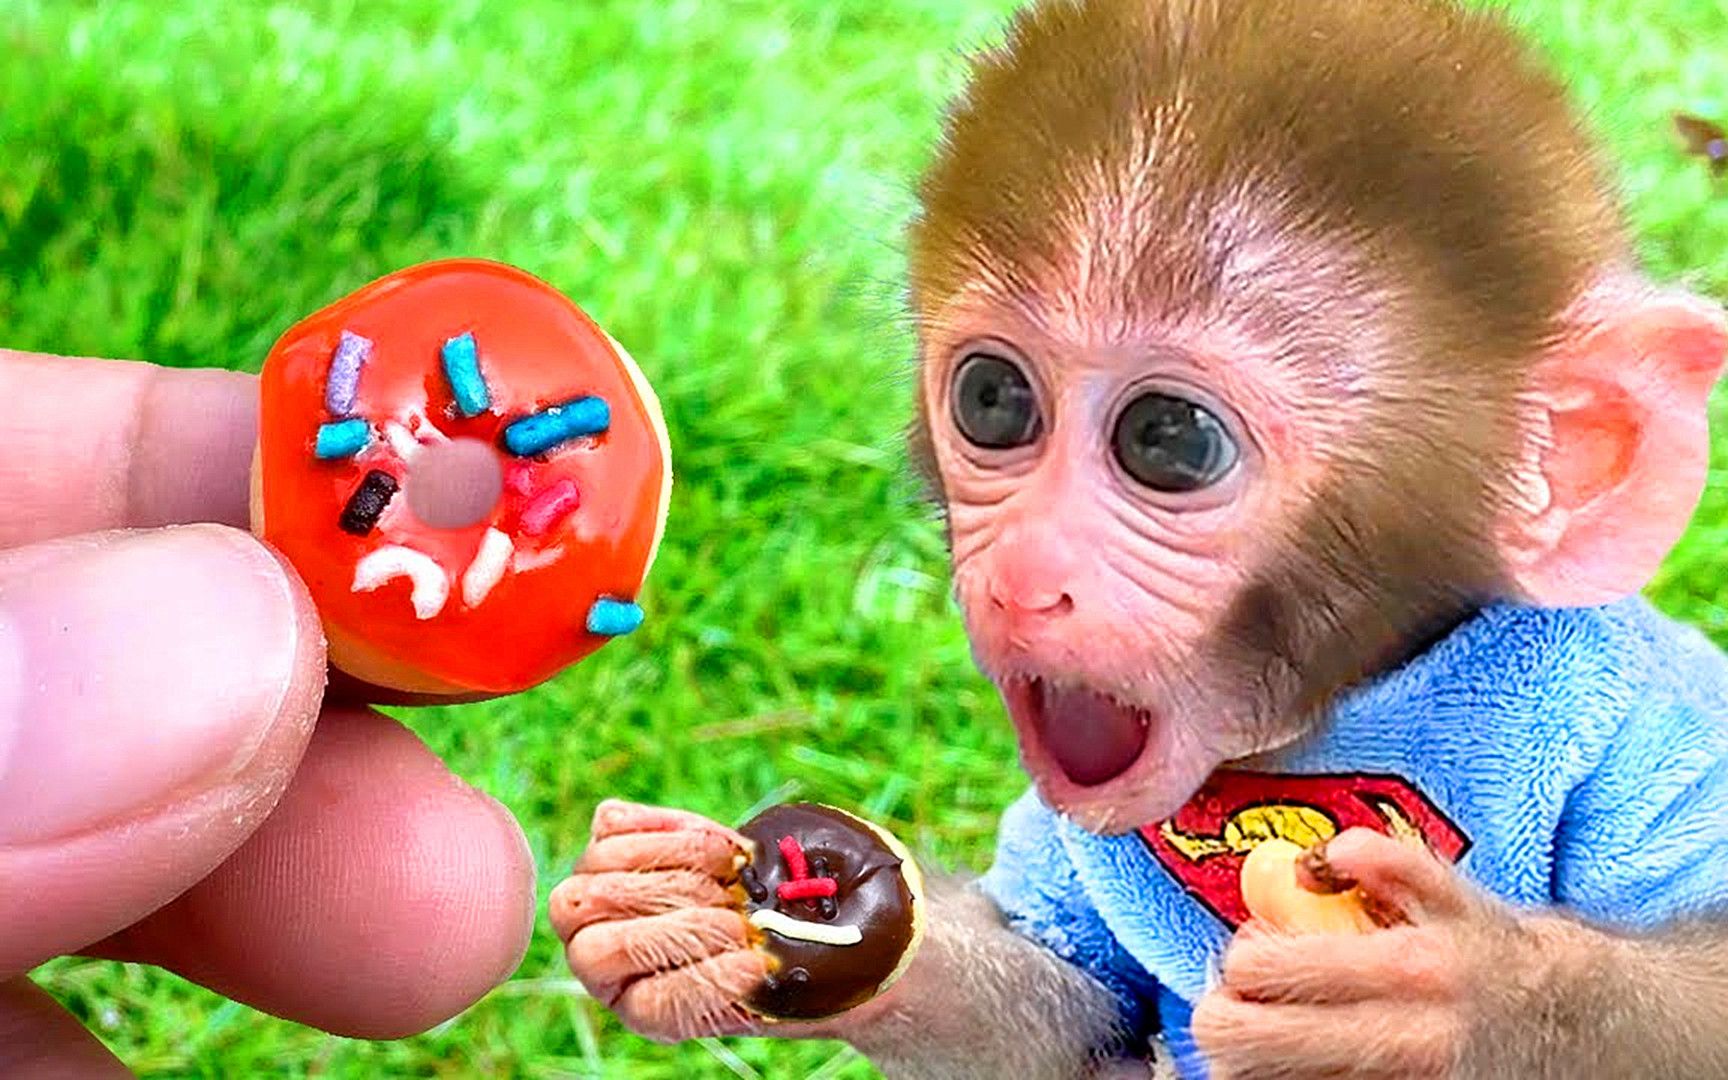 猴子与蛋糕的漫画人物 库存例证. 插画 包括有 森林, 精美, 例证, 食物, 乳脂状, 大猩猩, 字符 - 71854009